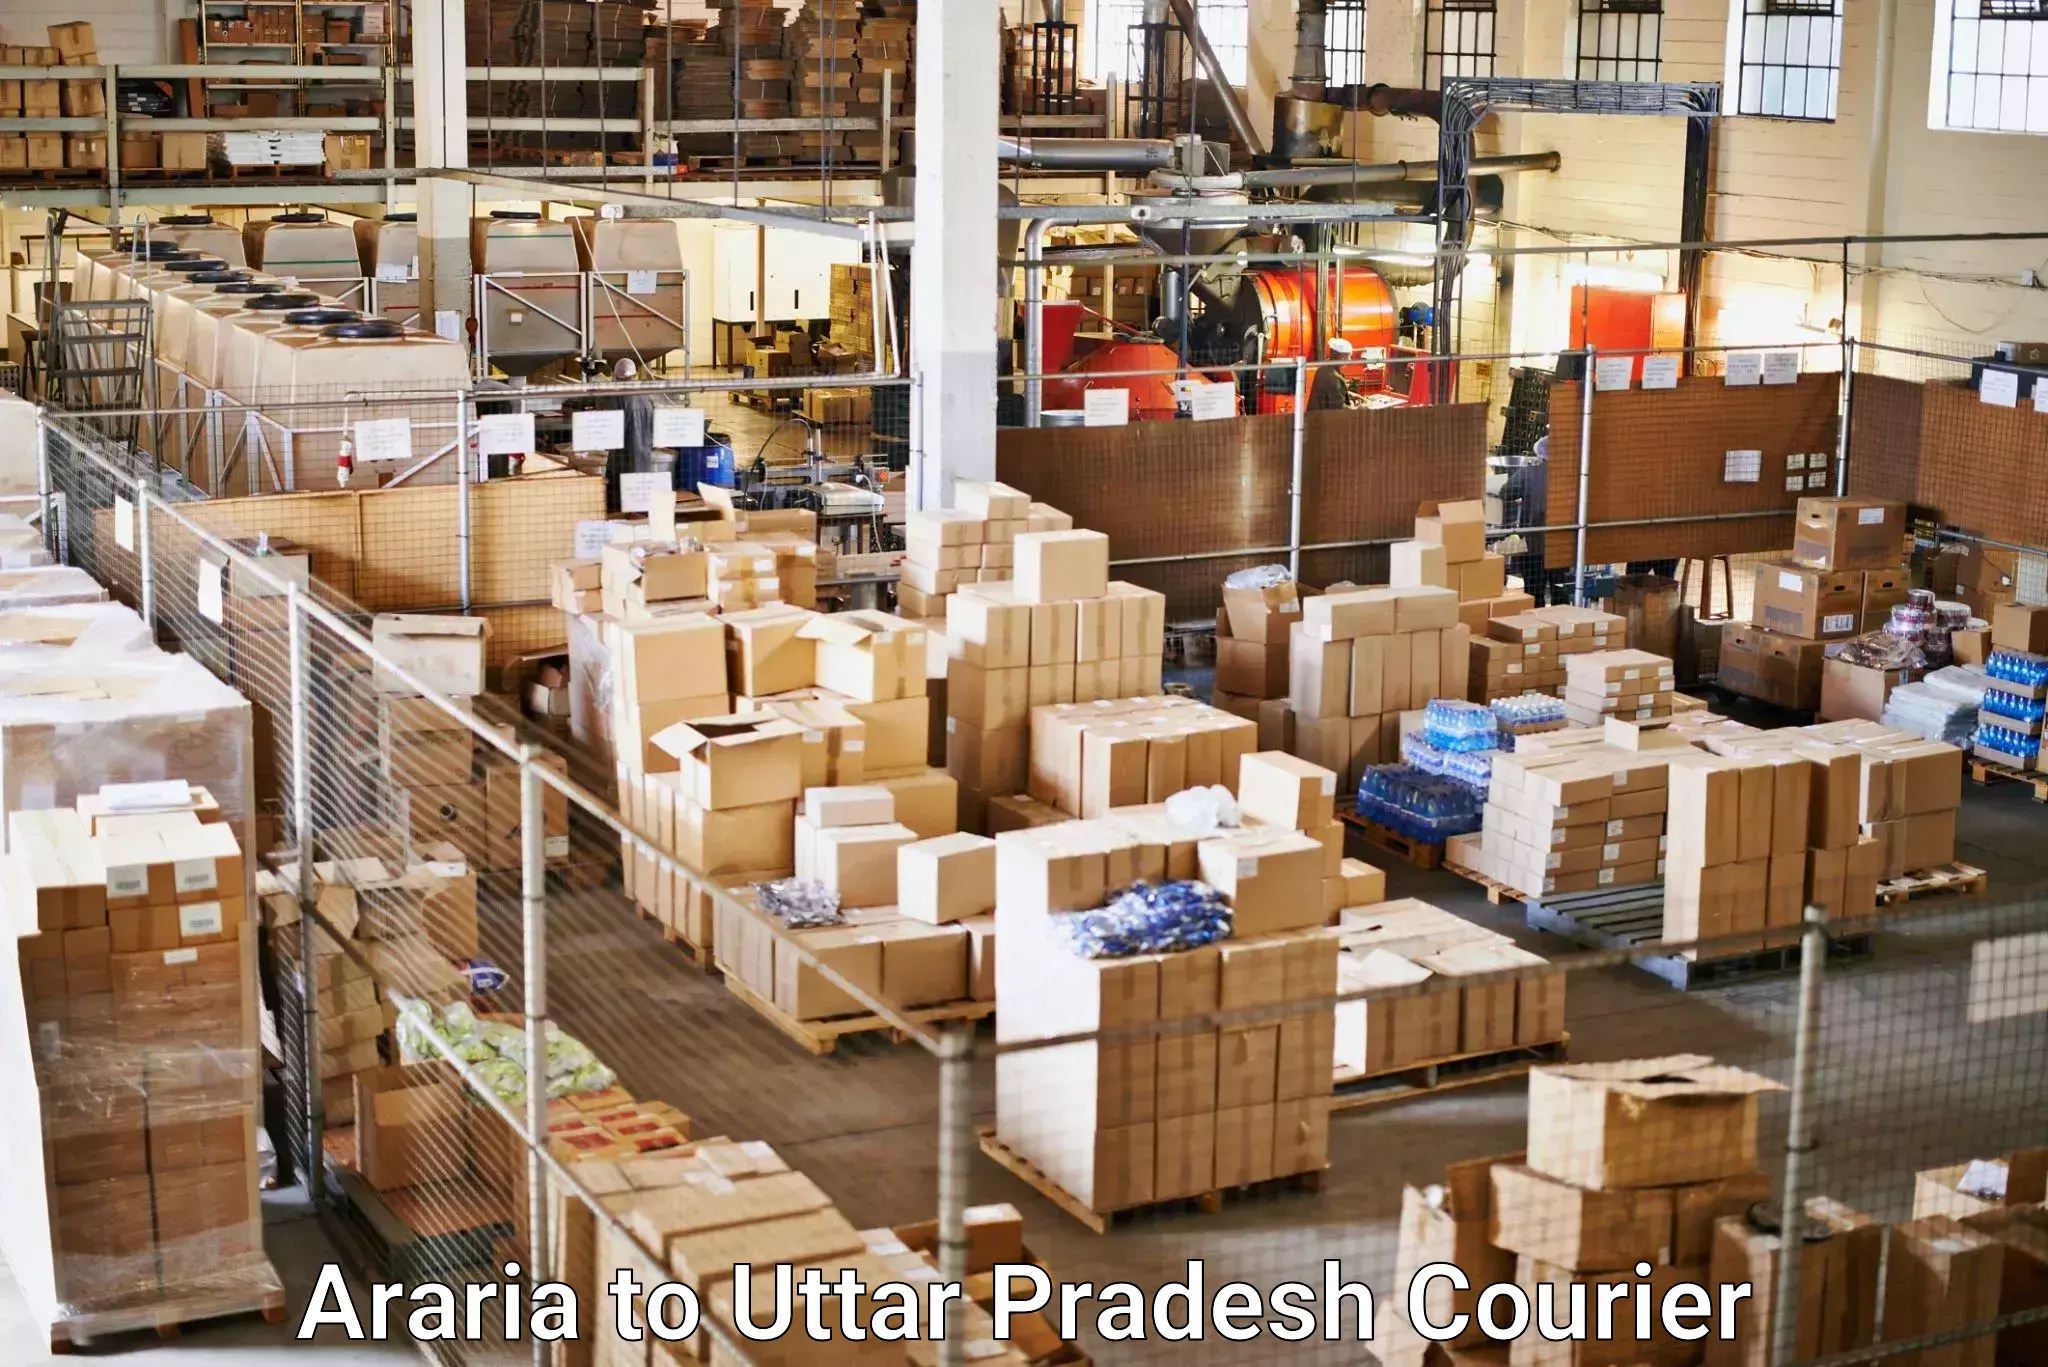 Local delivery service Araria to Aligarh